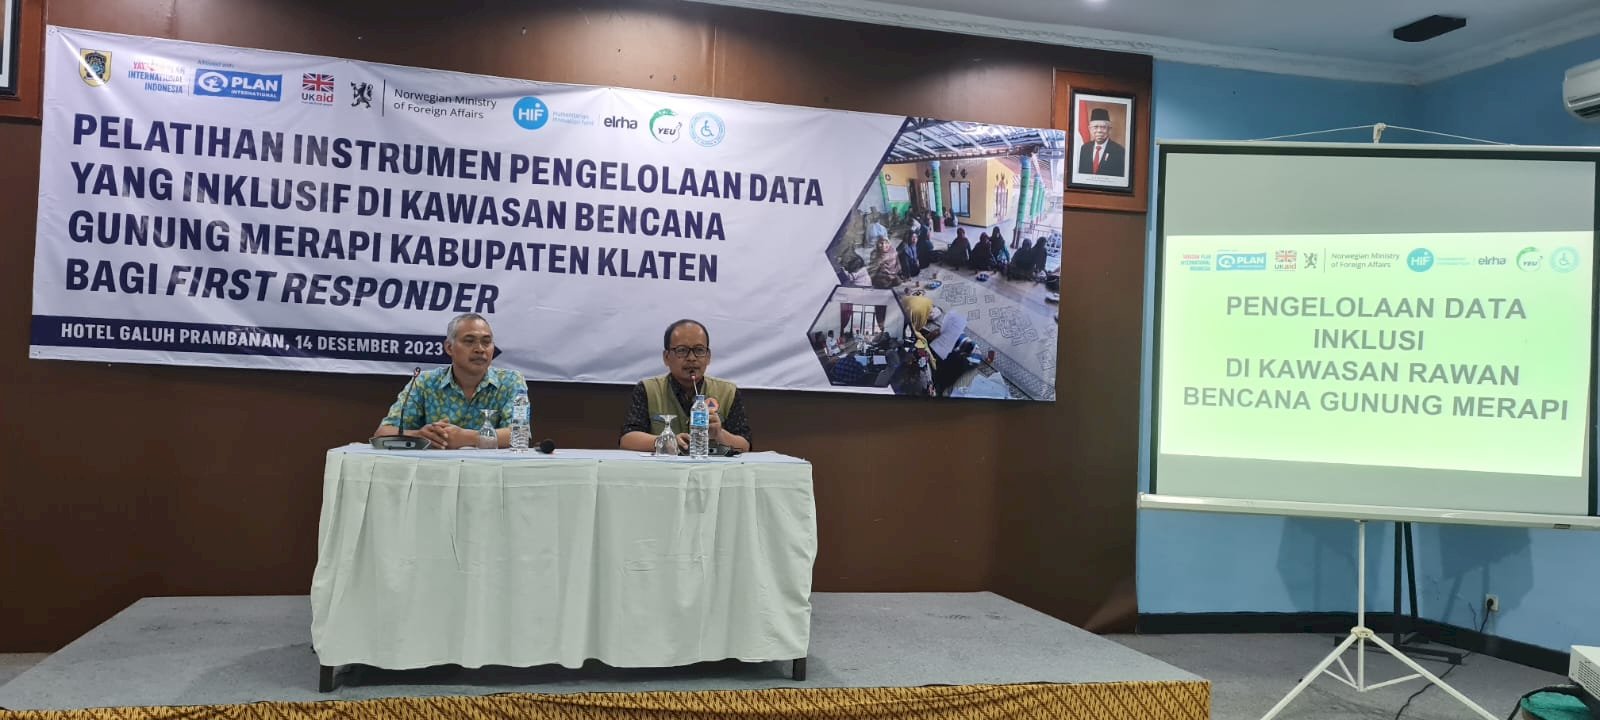 Pelatihan Instrumen Pengelolaan Data Yang Inklusif di Kawasan Bencana Gunung Merapi Kabupaten Klaten Bagi First Responder